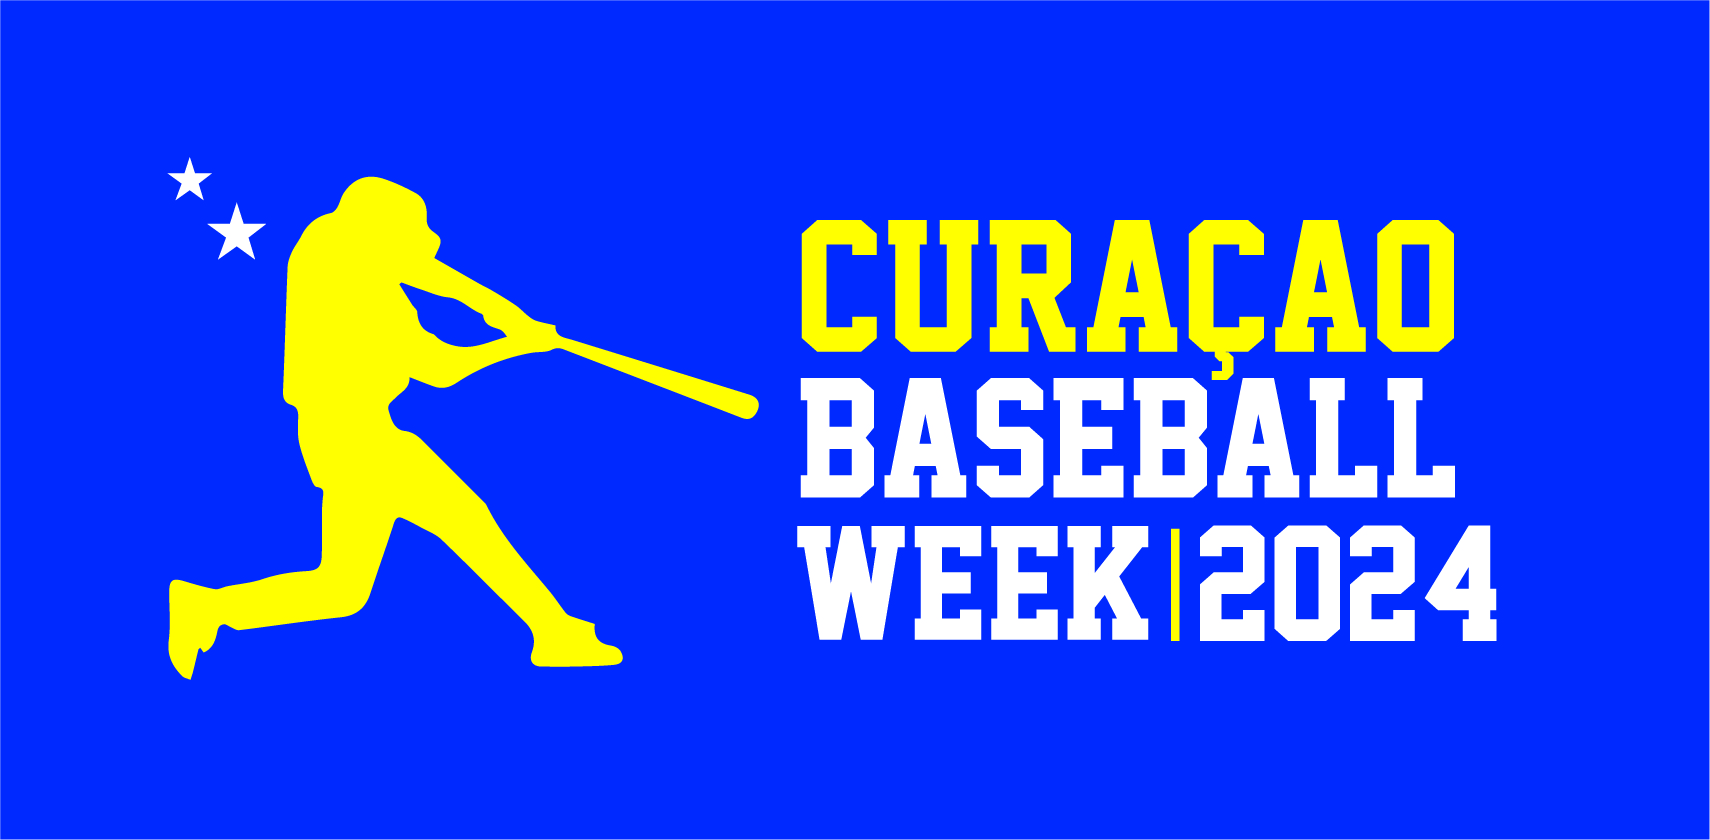 Curacao Baseball Week